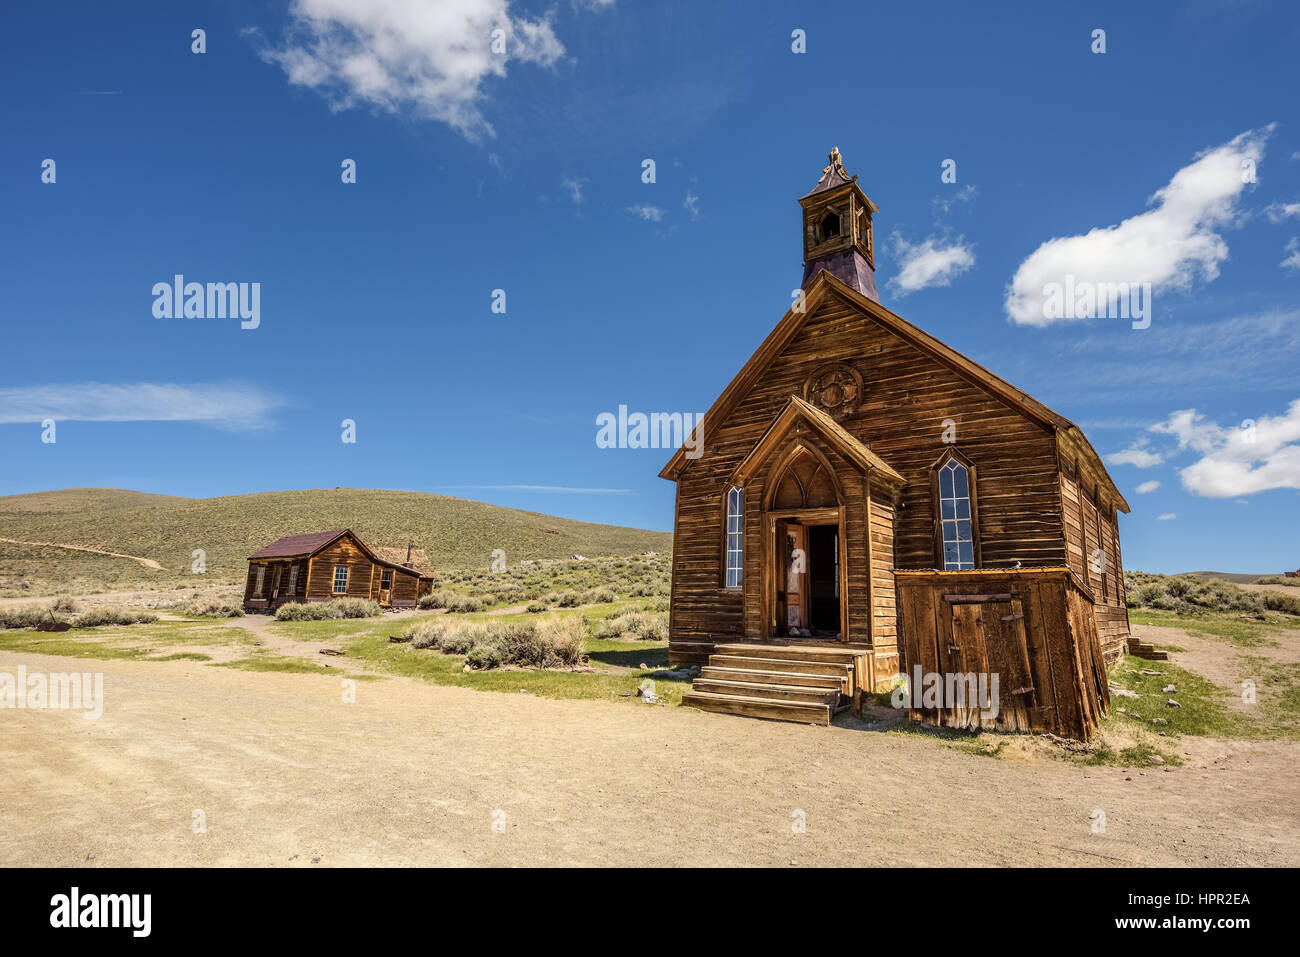 Holzkirche in Geisterstadt Bodie, California. Bodie ist eine historische State Park aus einem Goldrausch-Ära in Bodie Hügel östlich der Sierra Nevada. Stockfoto